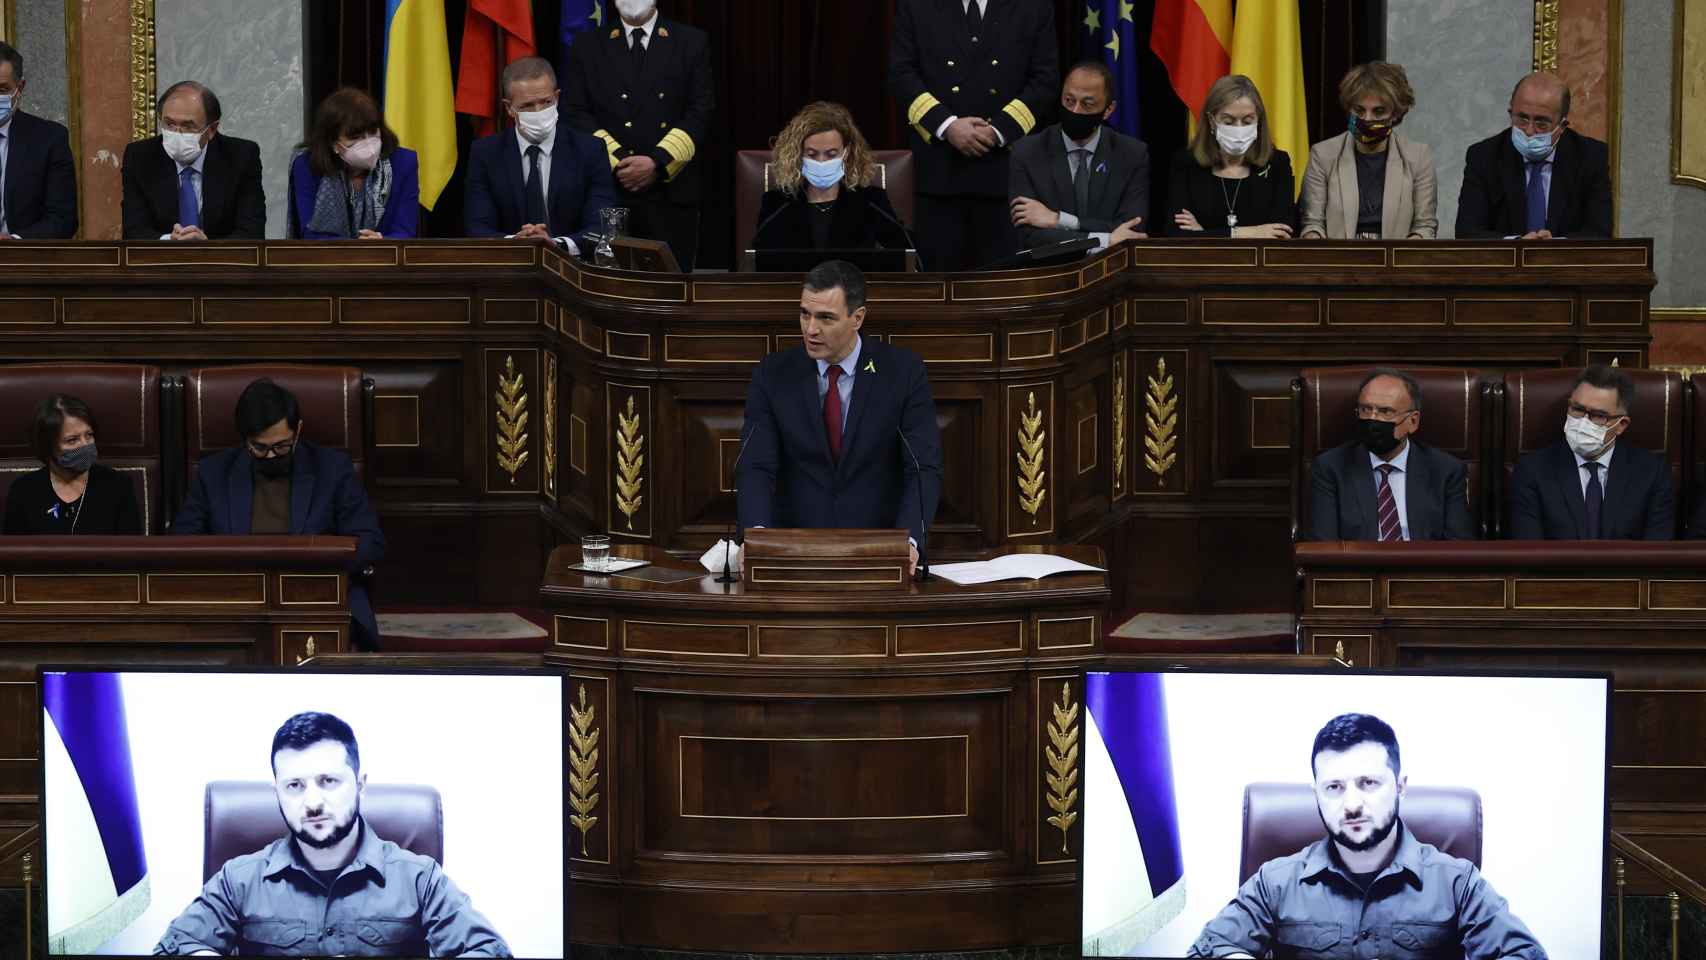 El presidente del Gobierno, Pedro Sánchez, toma la palabra tras la intervención por videoconferencia del presidente de Ucrania, Volodímir Zelenski en el pleno del Congreso.